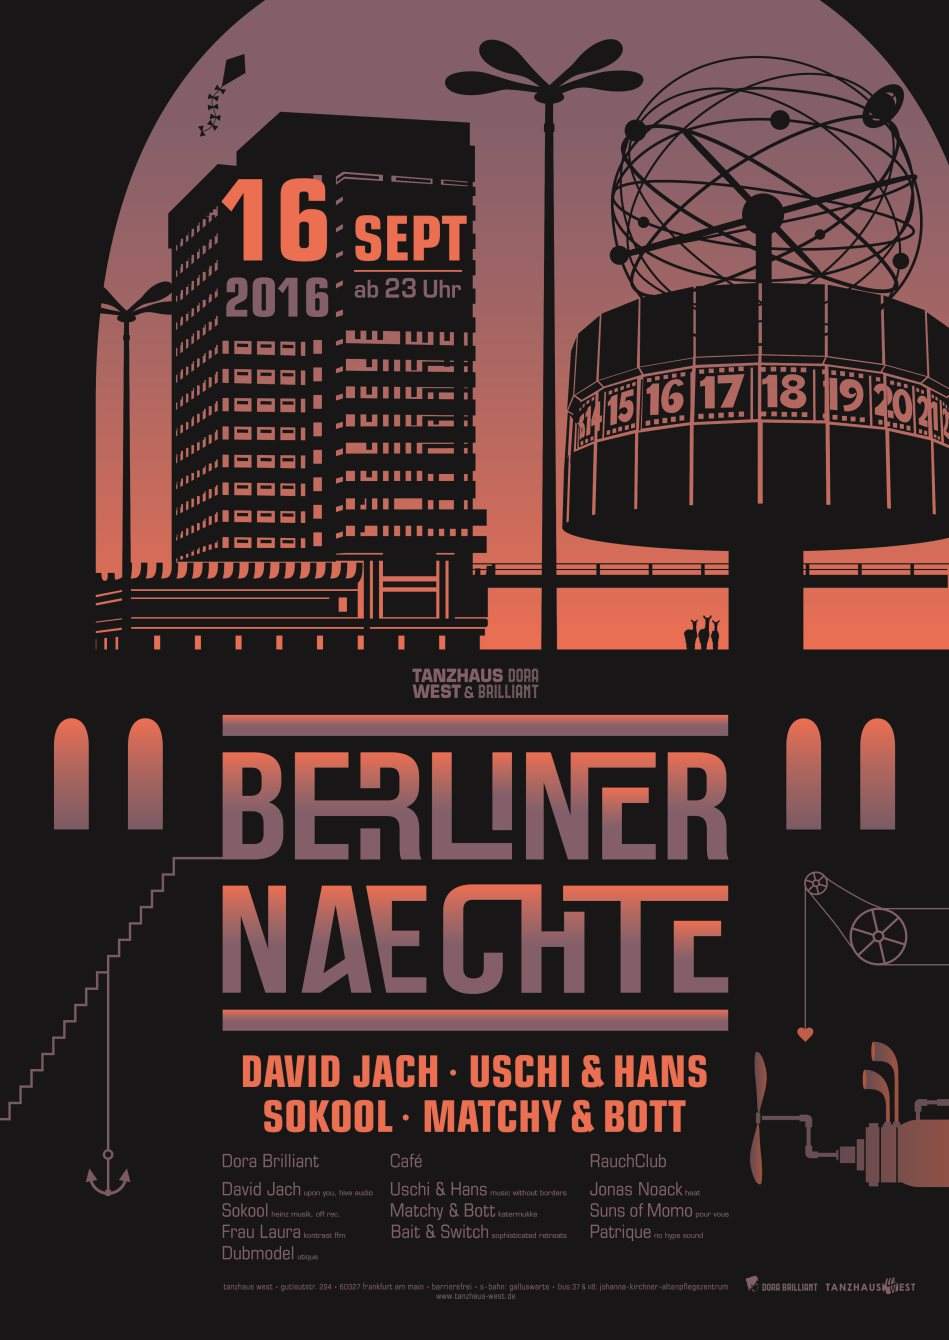 Berliner Naechte mit David Jach & Sokool - フライヤー表